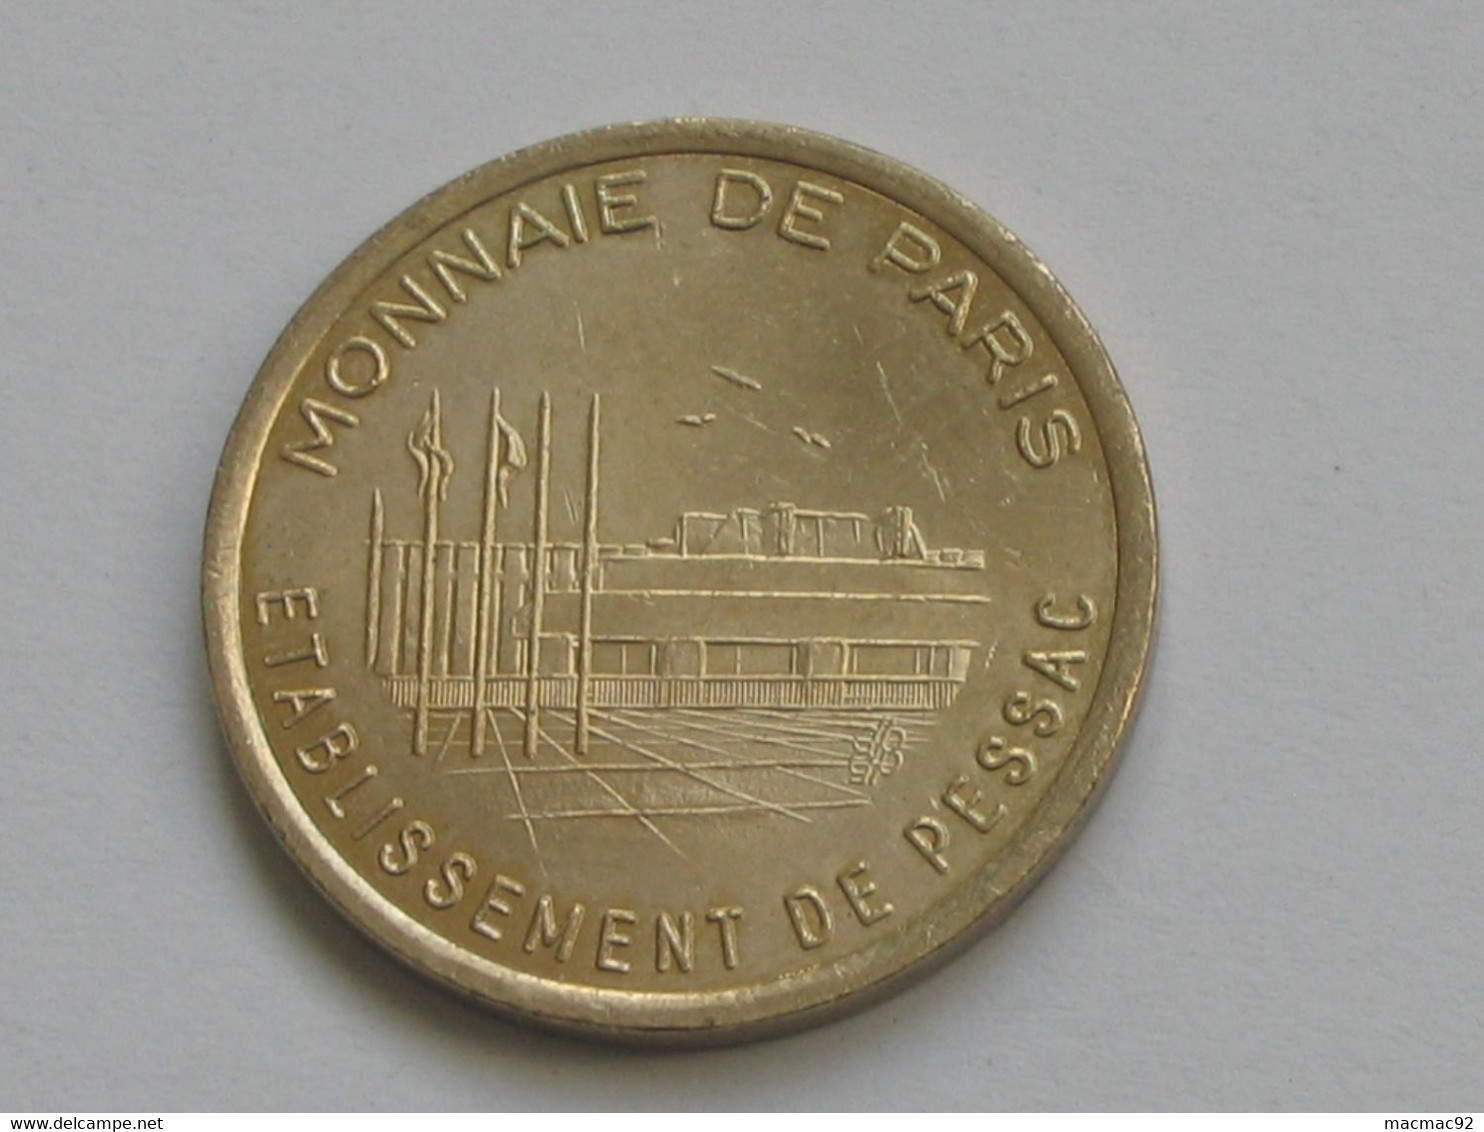 Rare Essai De Frappe Monétaire - Monnaie De Paris - Etablissement De Pessac -26.50 Mm - 8.26 G *** EN ACHAT IMMEDIAT *** - Probedrucke